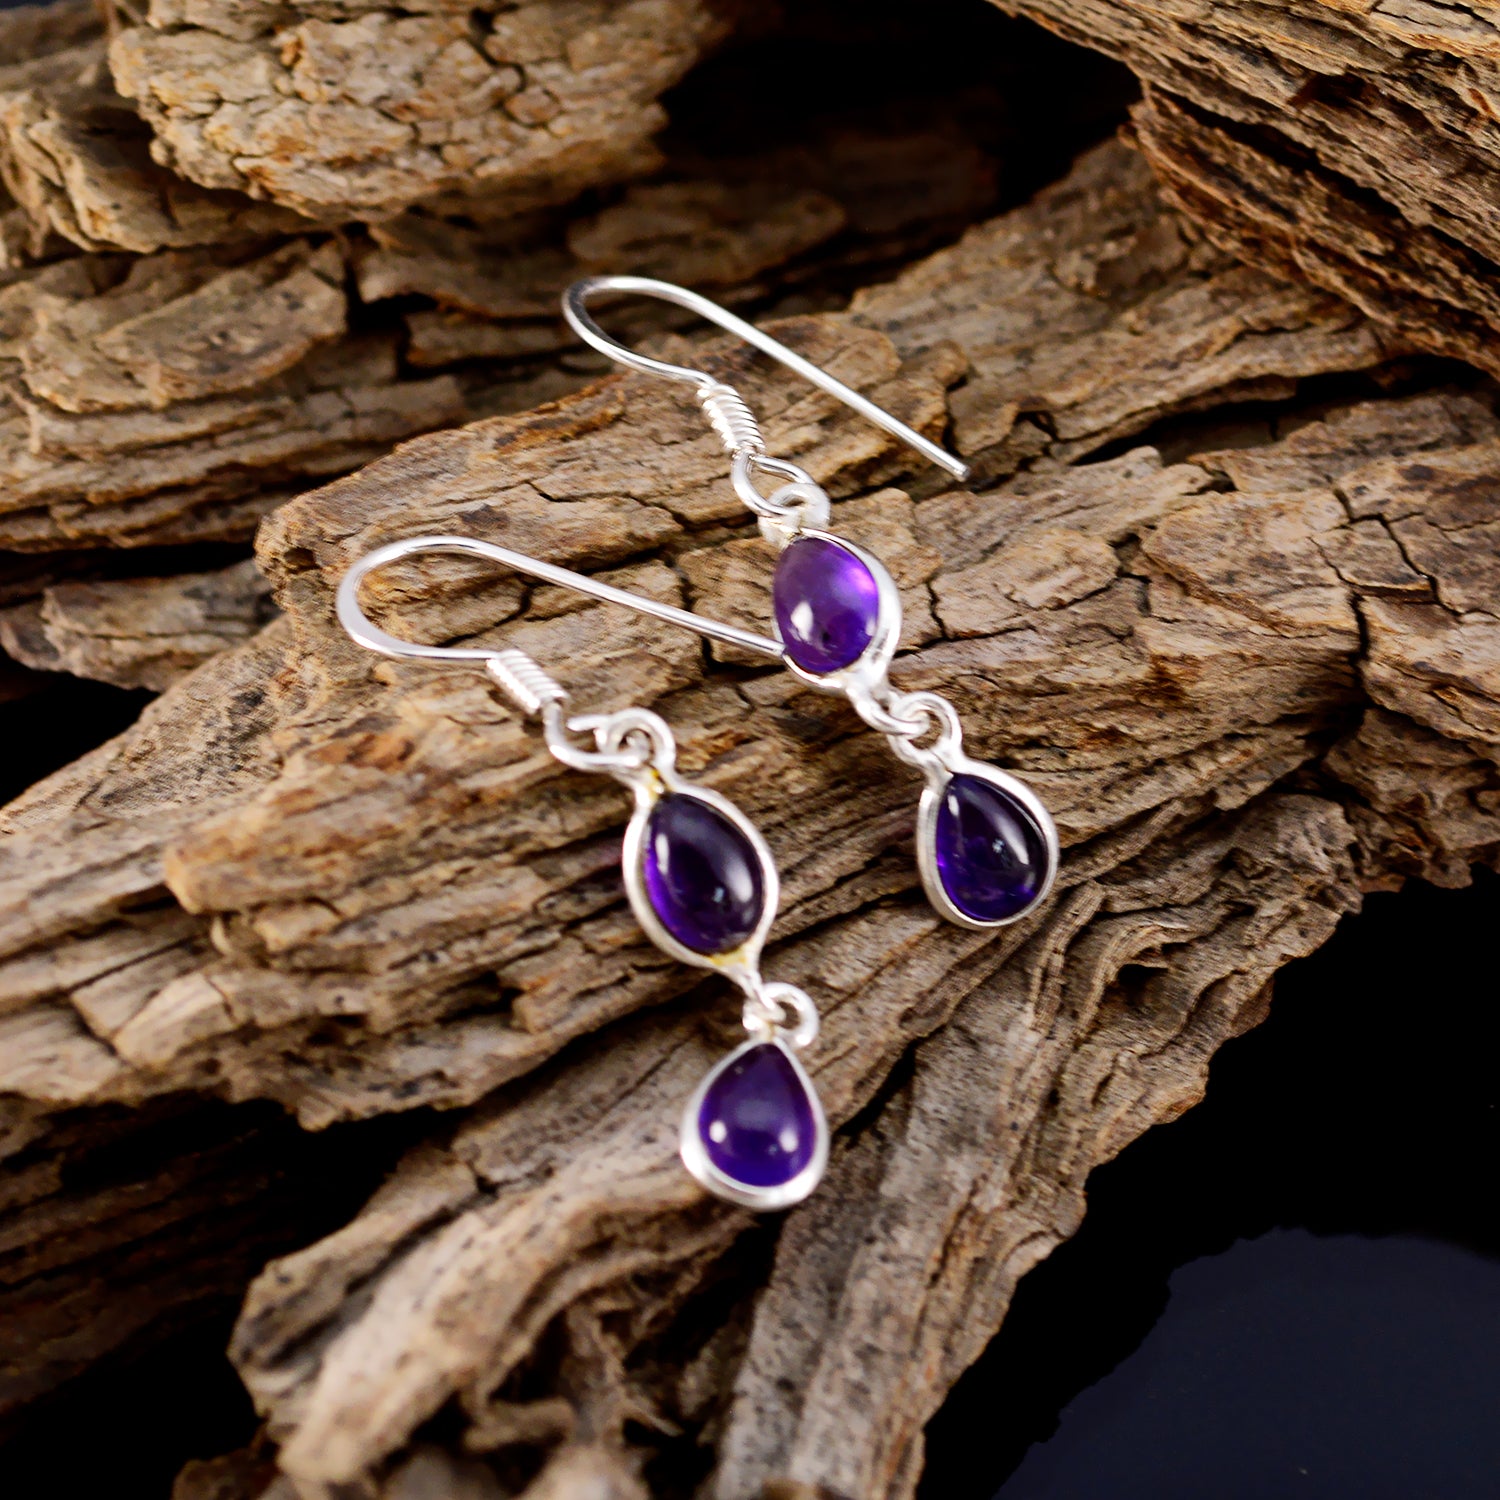 Riyo Good Gemstones pear Cabochon Purple Amethyst Silver Earring gift for black Friday